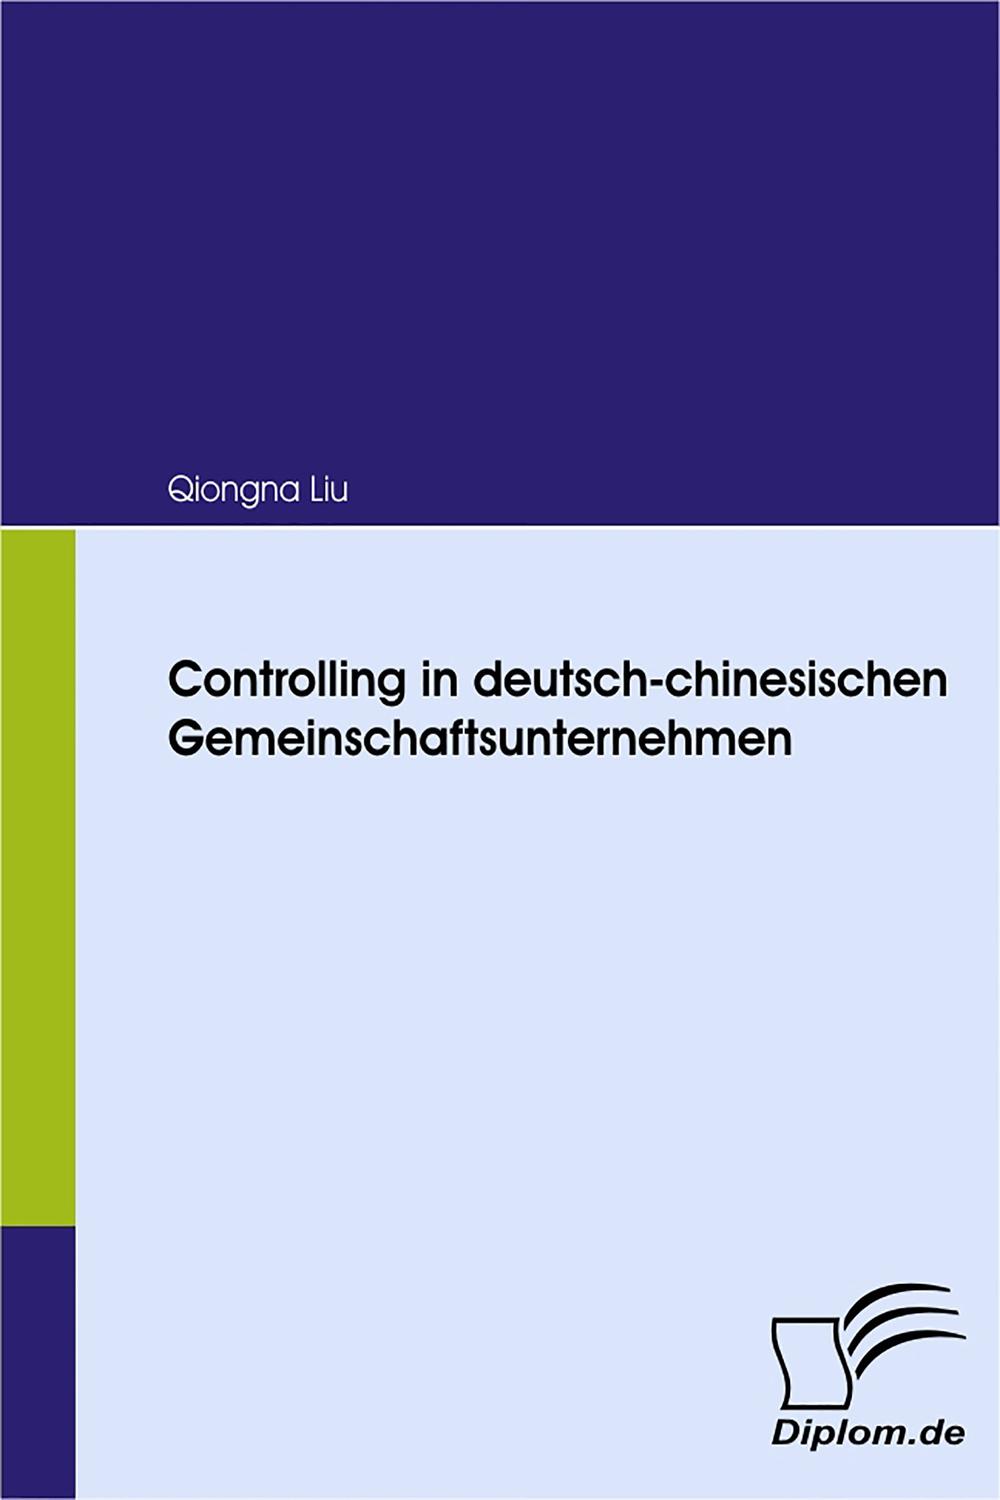 Controlling in deutsch-chinesischen Gemeinschaftsunternehmen - Qiongna Liu